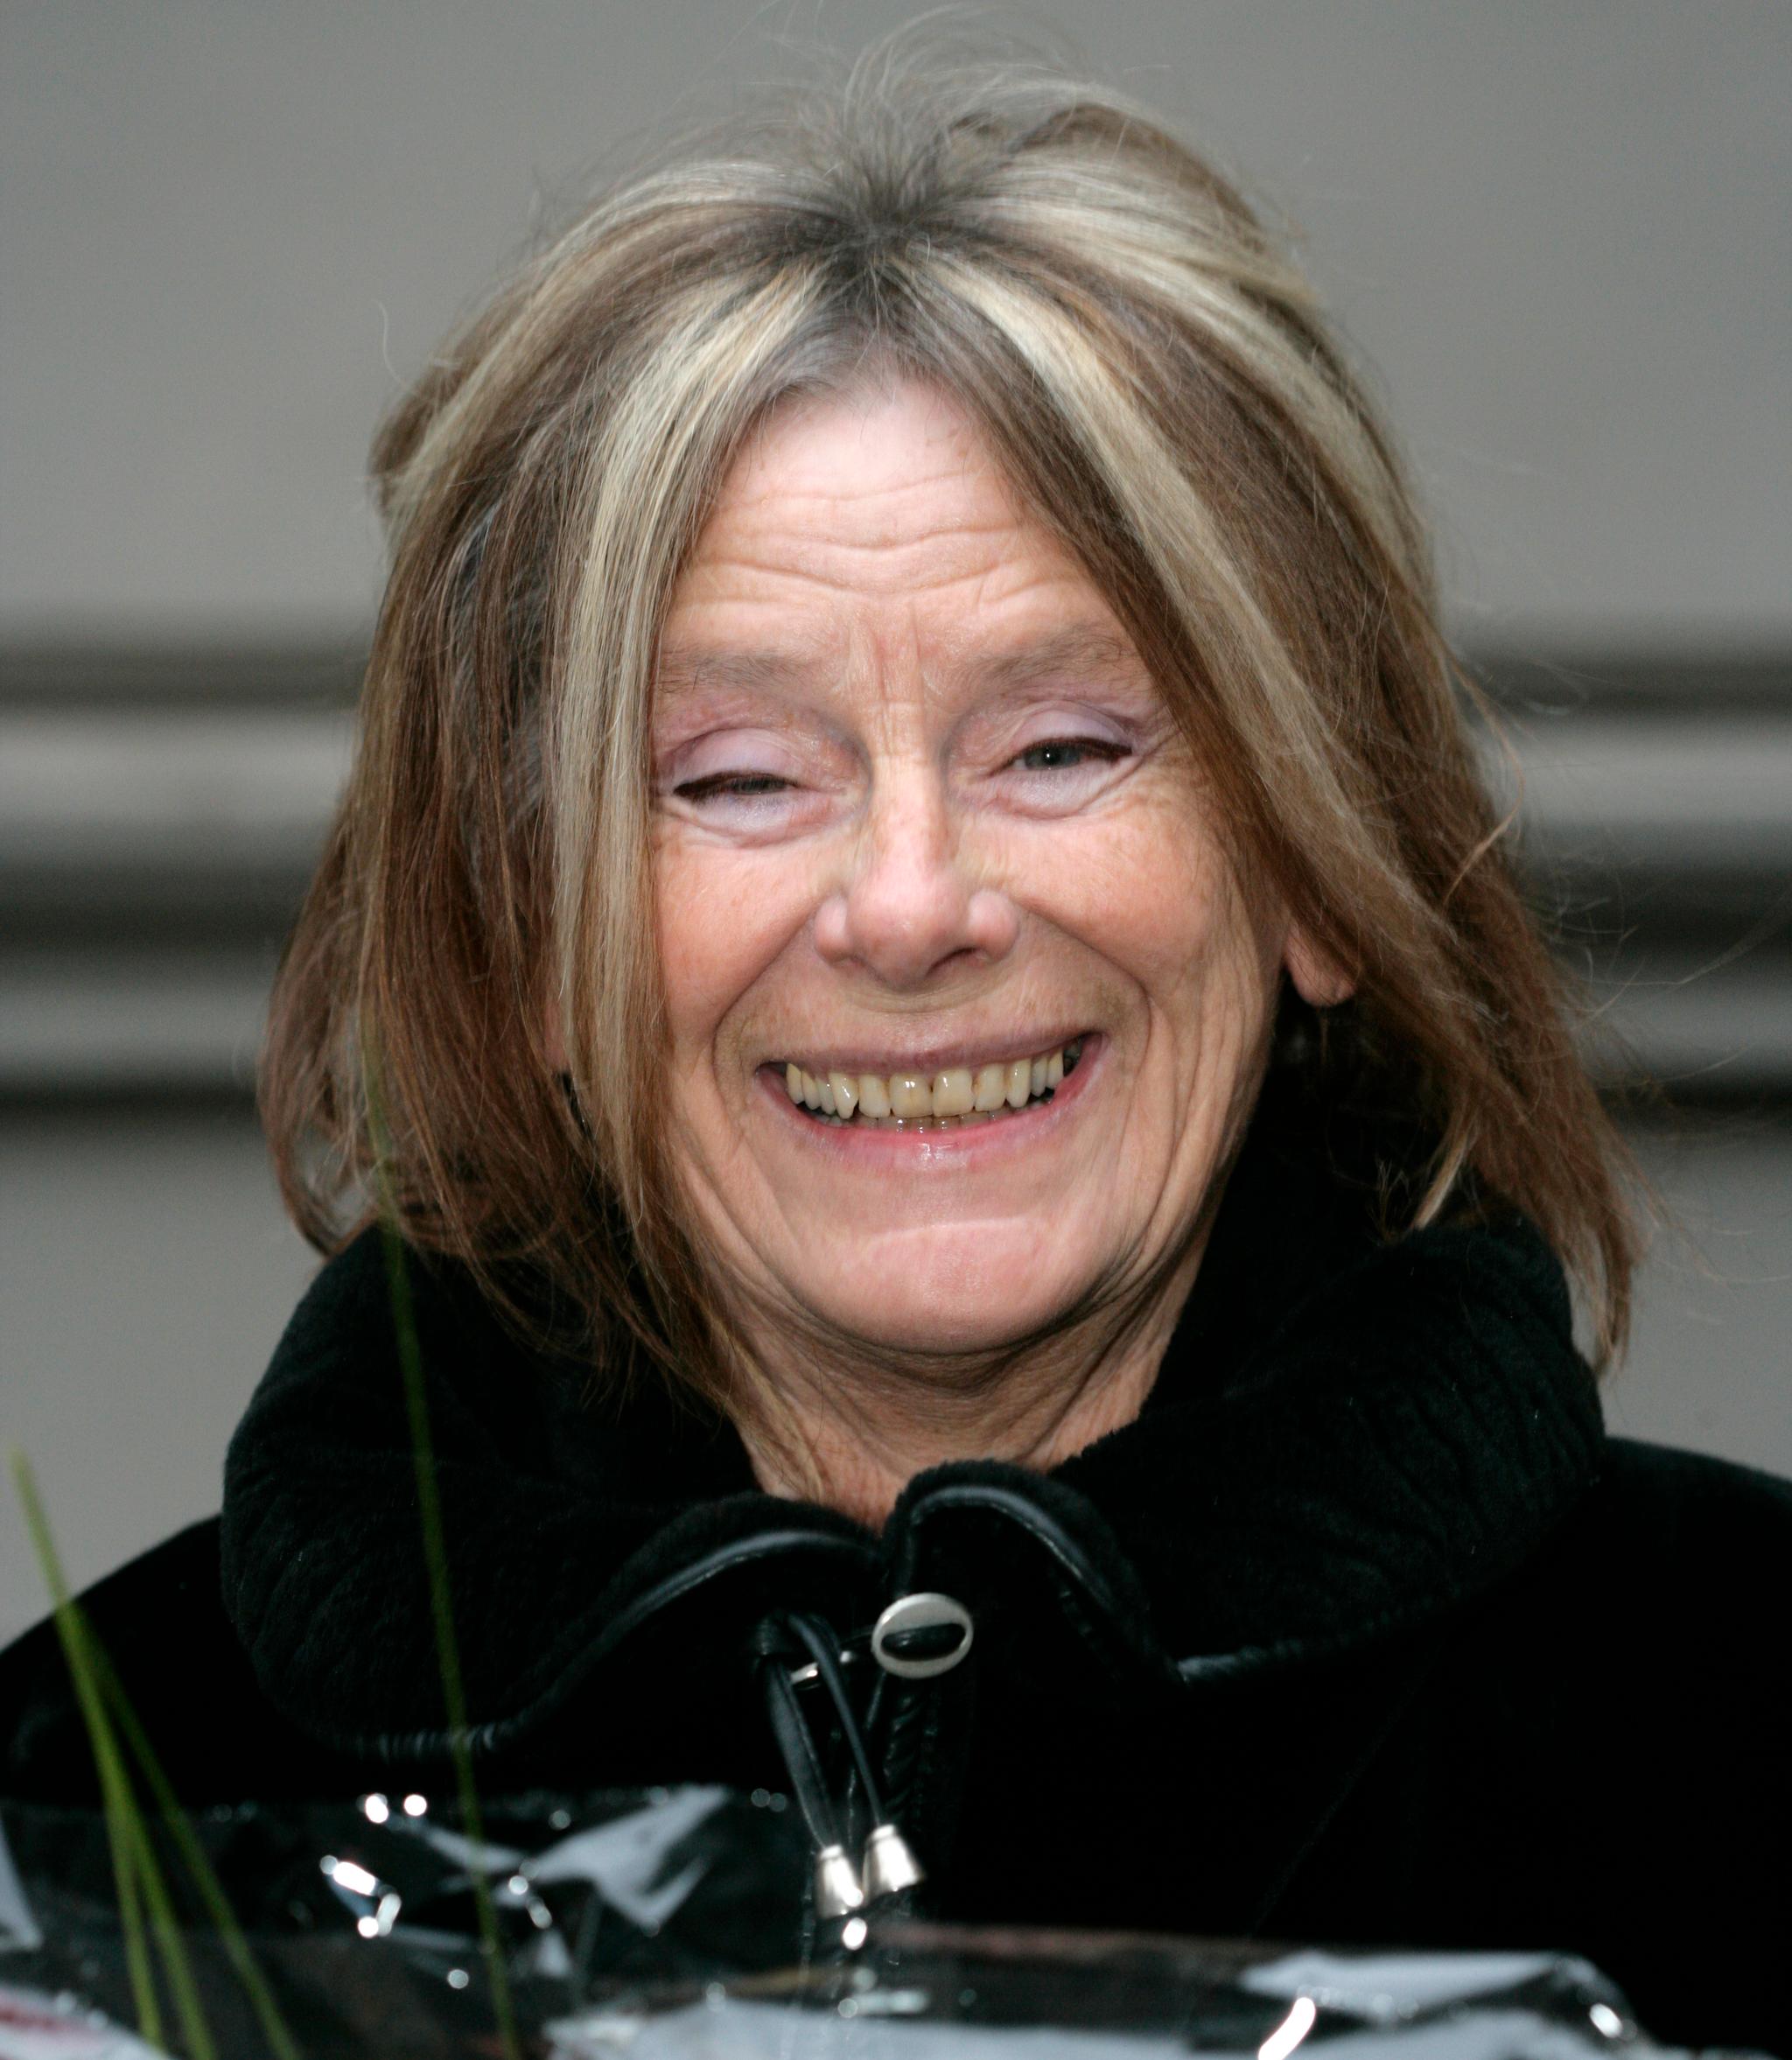 Poeten Eldrid Lunden har tidligere mottatt en rekke utmerkelser for sitt litterære arbeid. Bildet er fra 2005 da hun mottok Mads Wiel Nygaards legat.